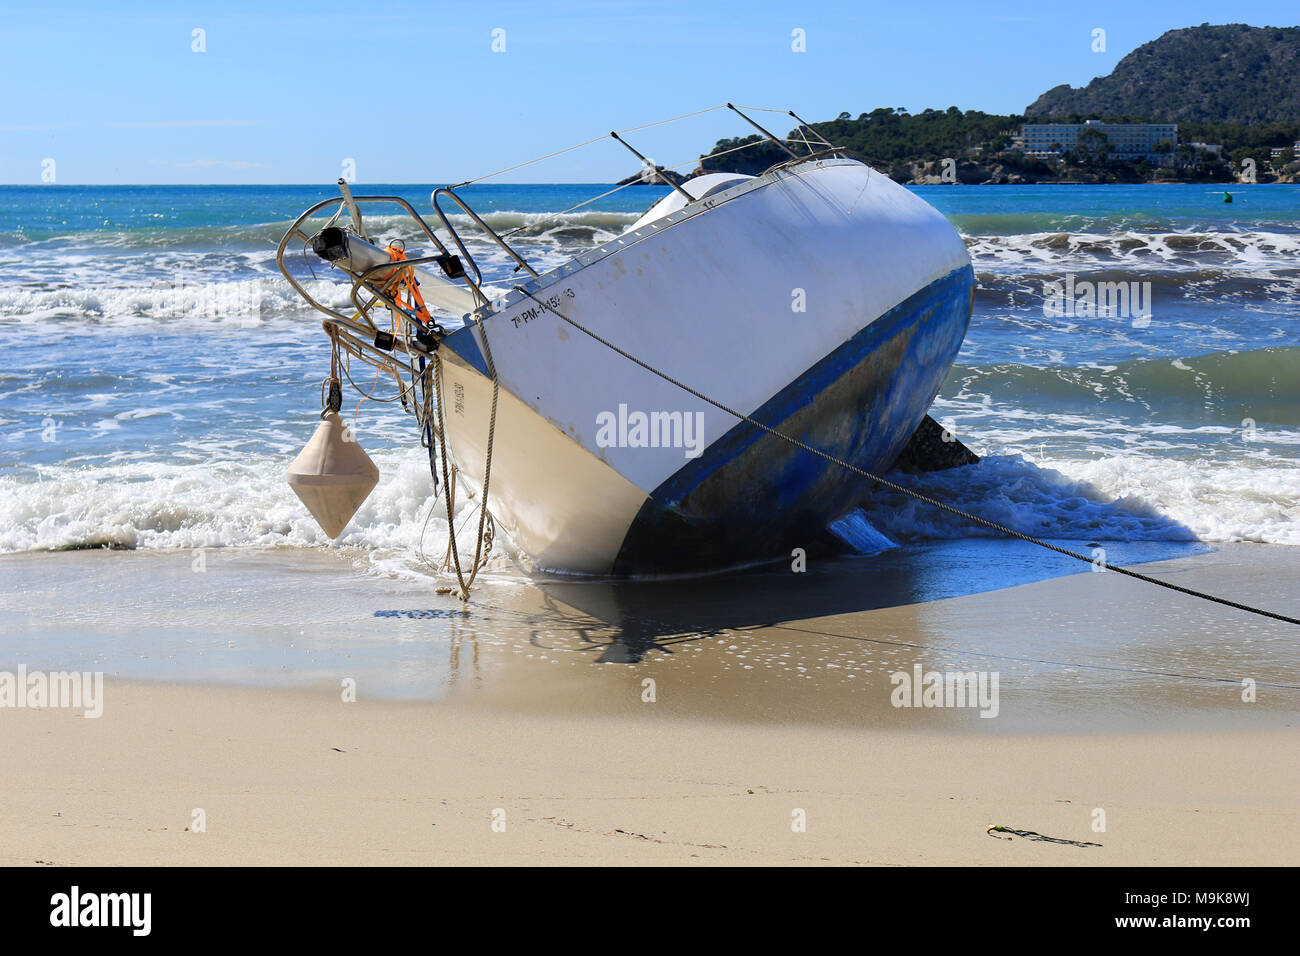 Un bateau se trouvant à la plage de sable Banque D'Images